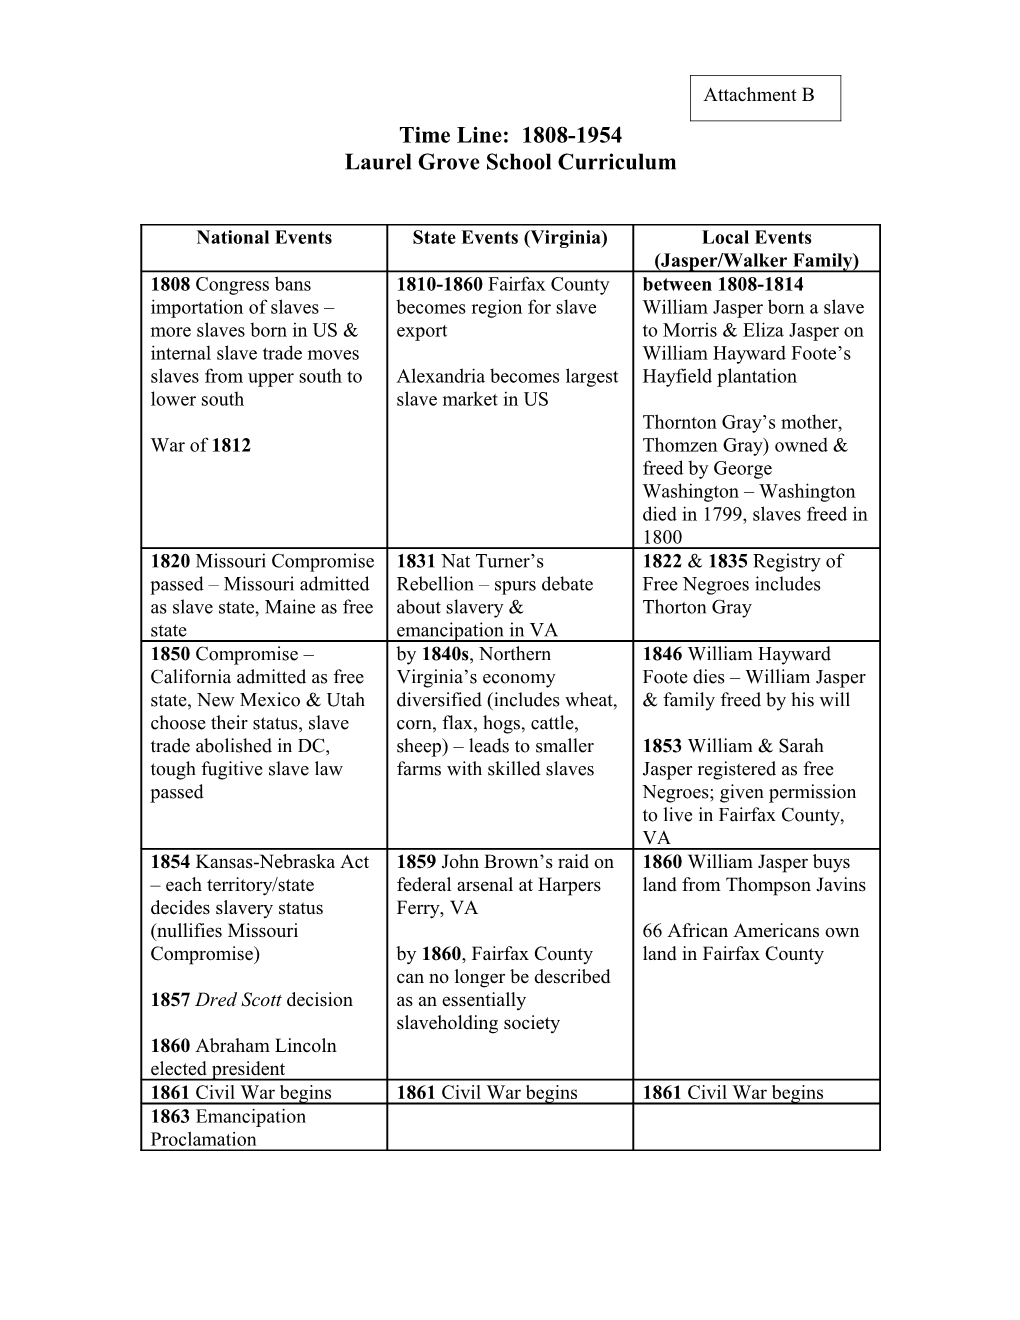 Laurelgroveschool Curriculum